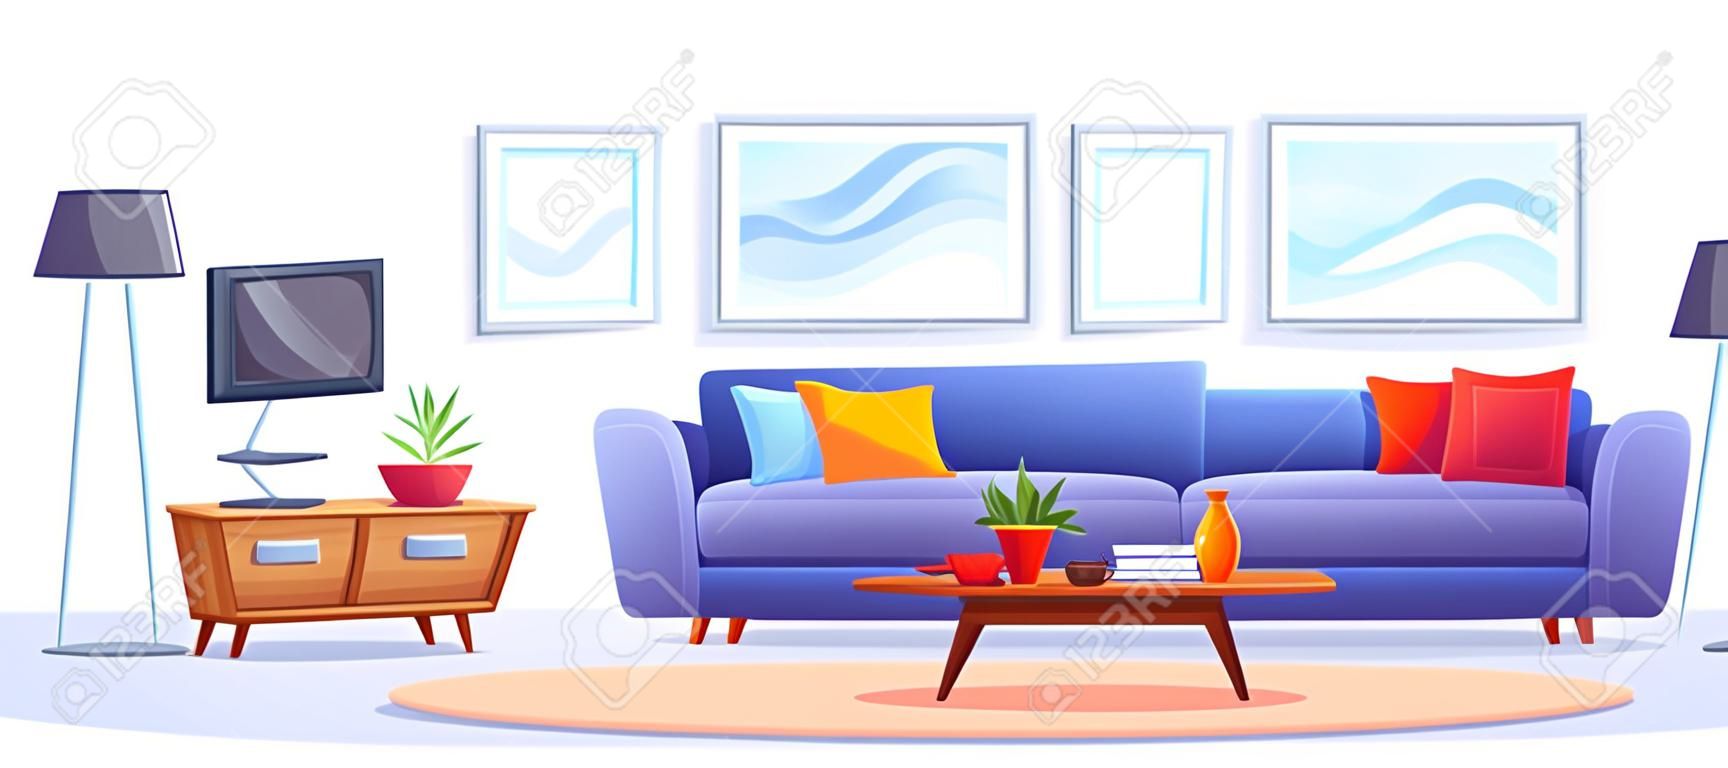 Wnętrze domu z meblami i telewizorem Pokój dzienny z niebieską sofą Telewizor na stojaku Stolik kawowy Dywan Regał Rośliny i zdjęcia na ścianie wektor ilustracja kreskówka izolowana na białym